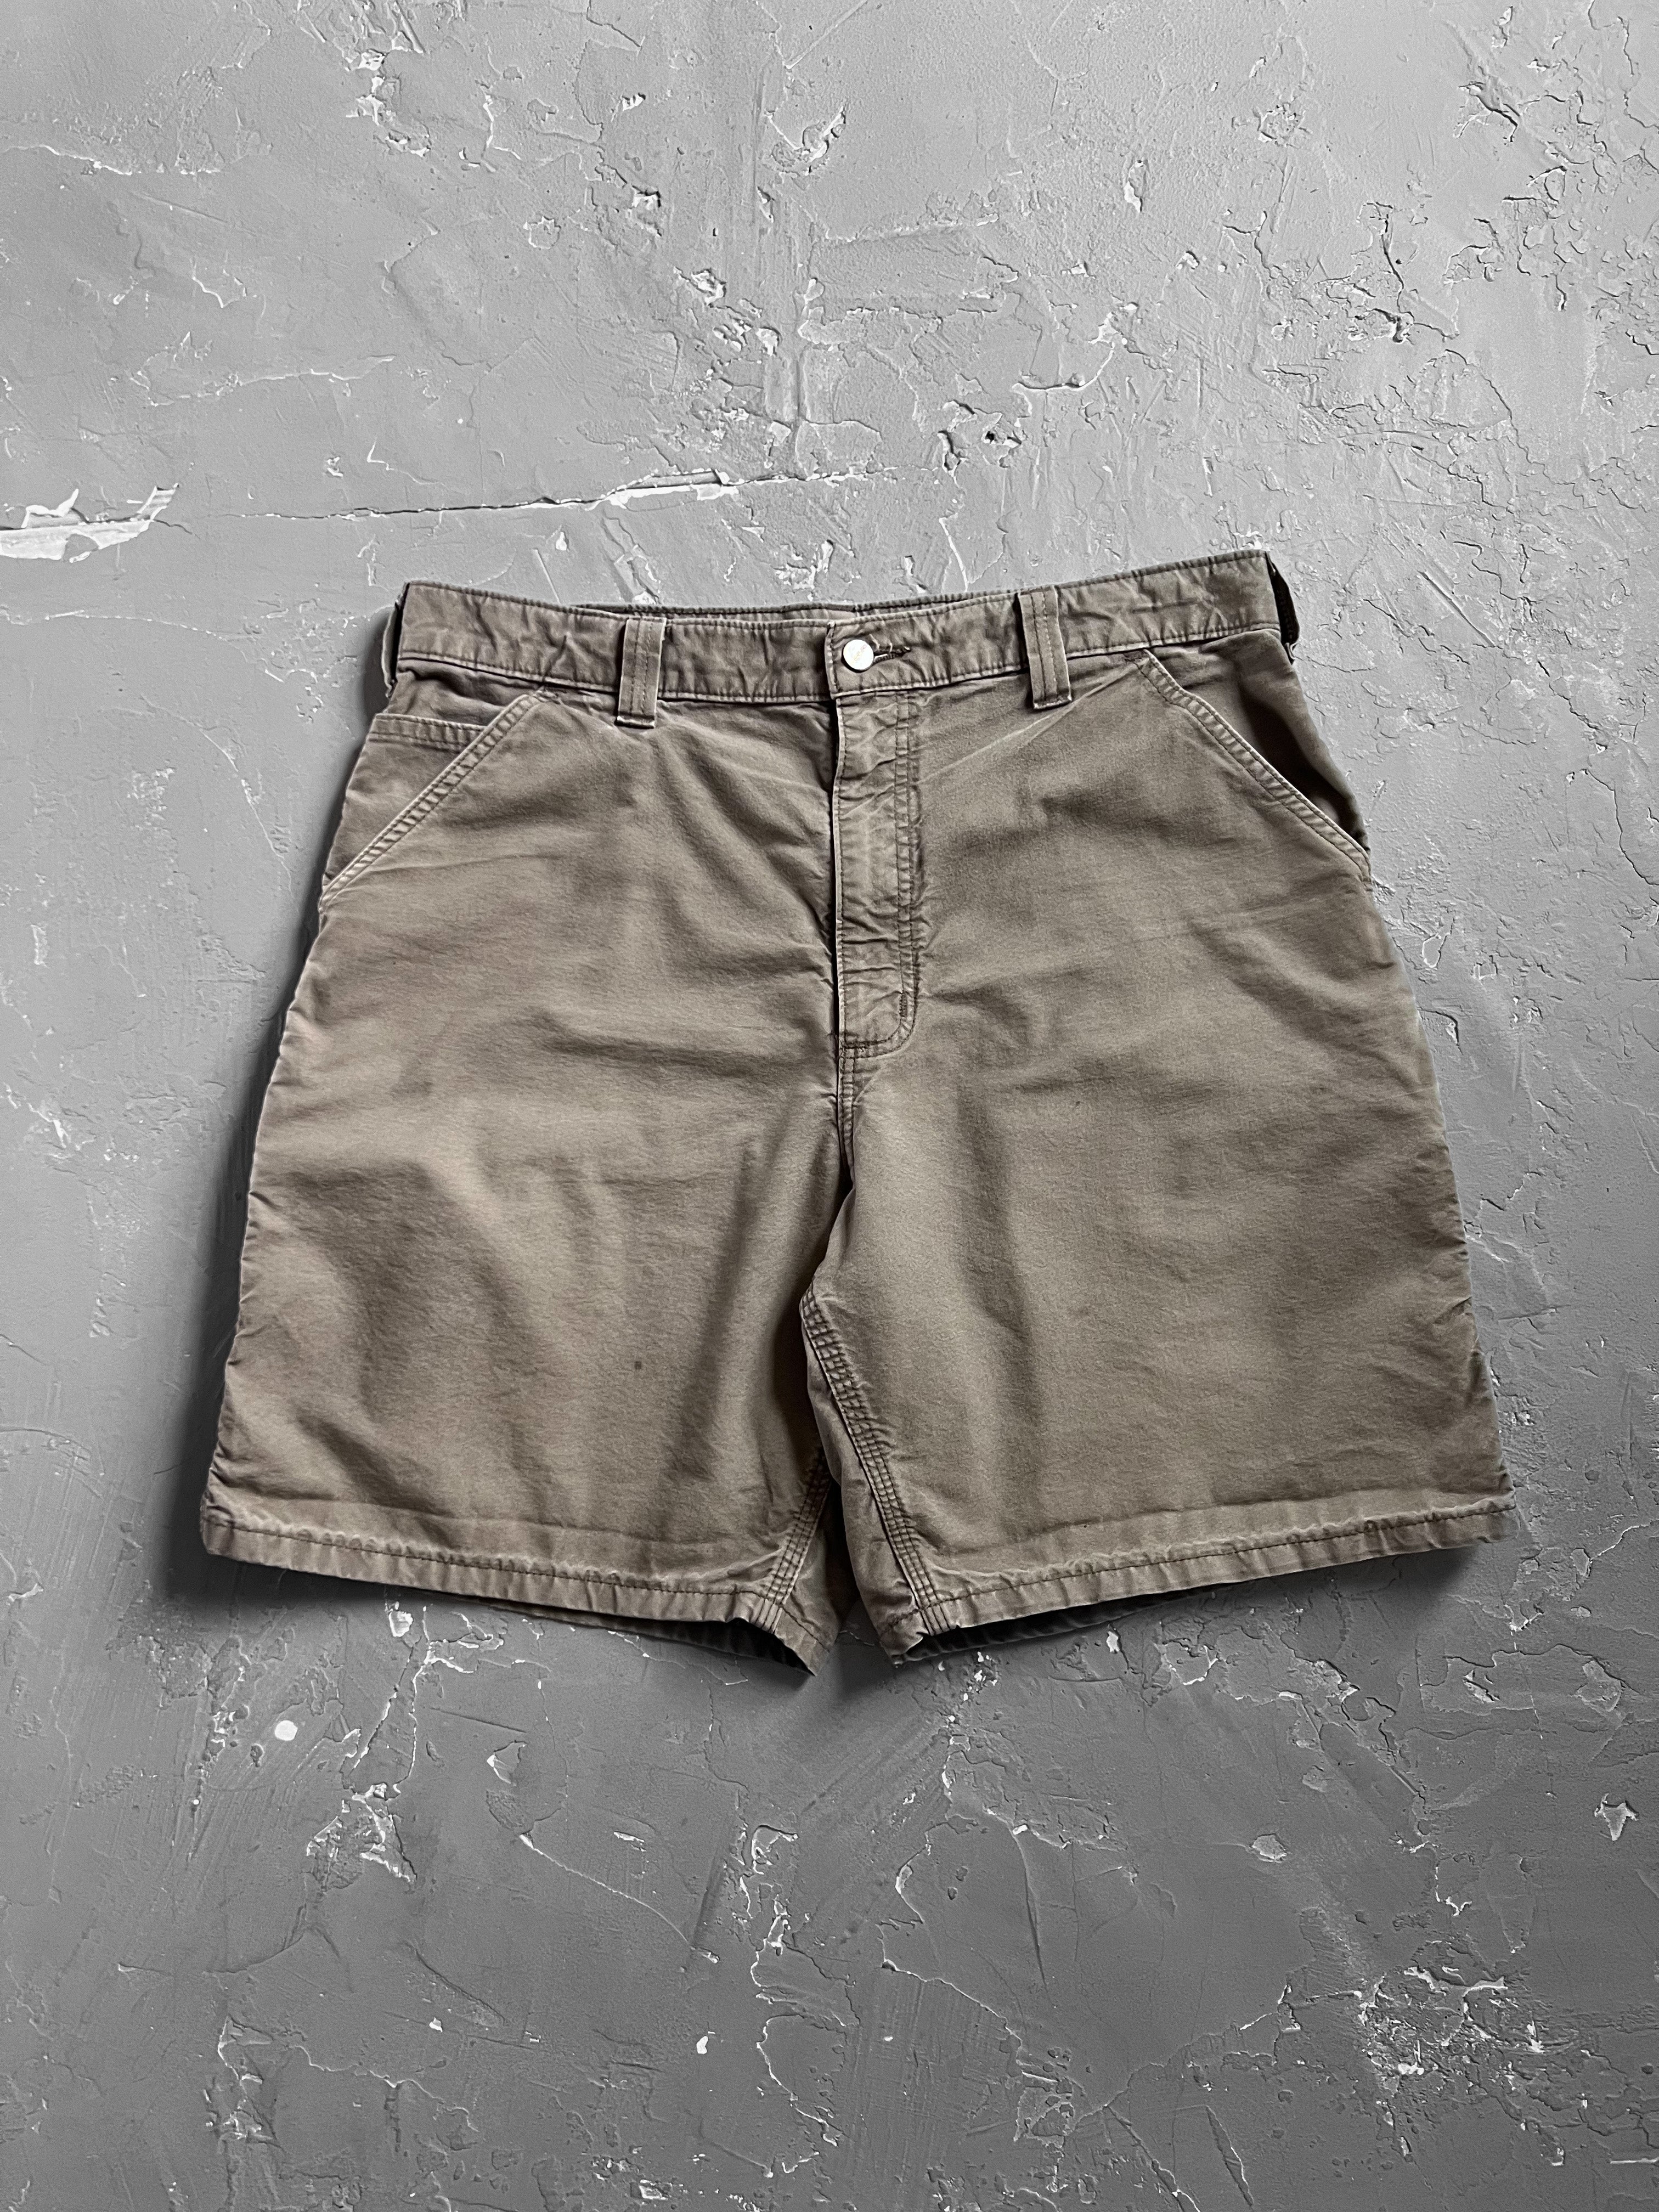 Carhartt Light Brown Carpenter Shorts [36]